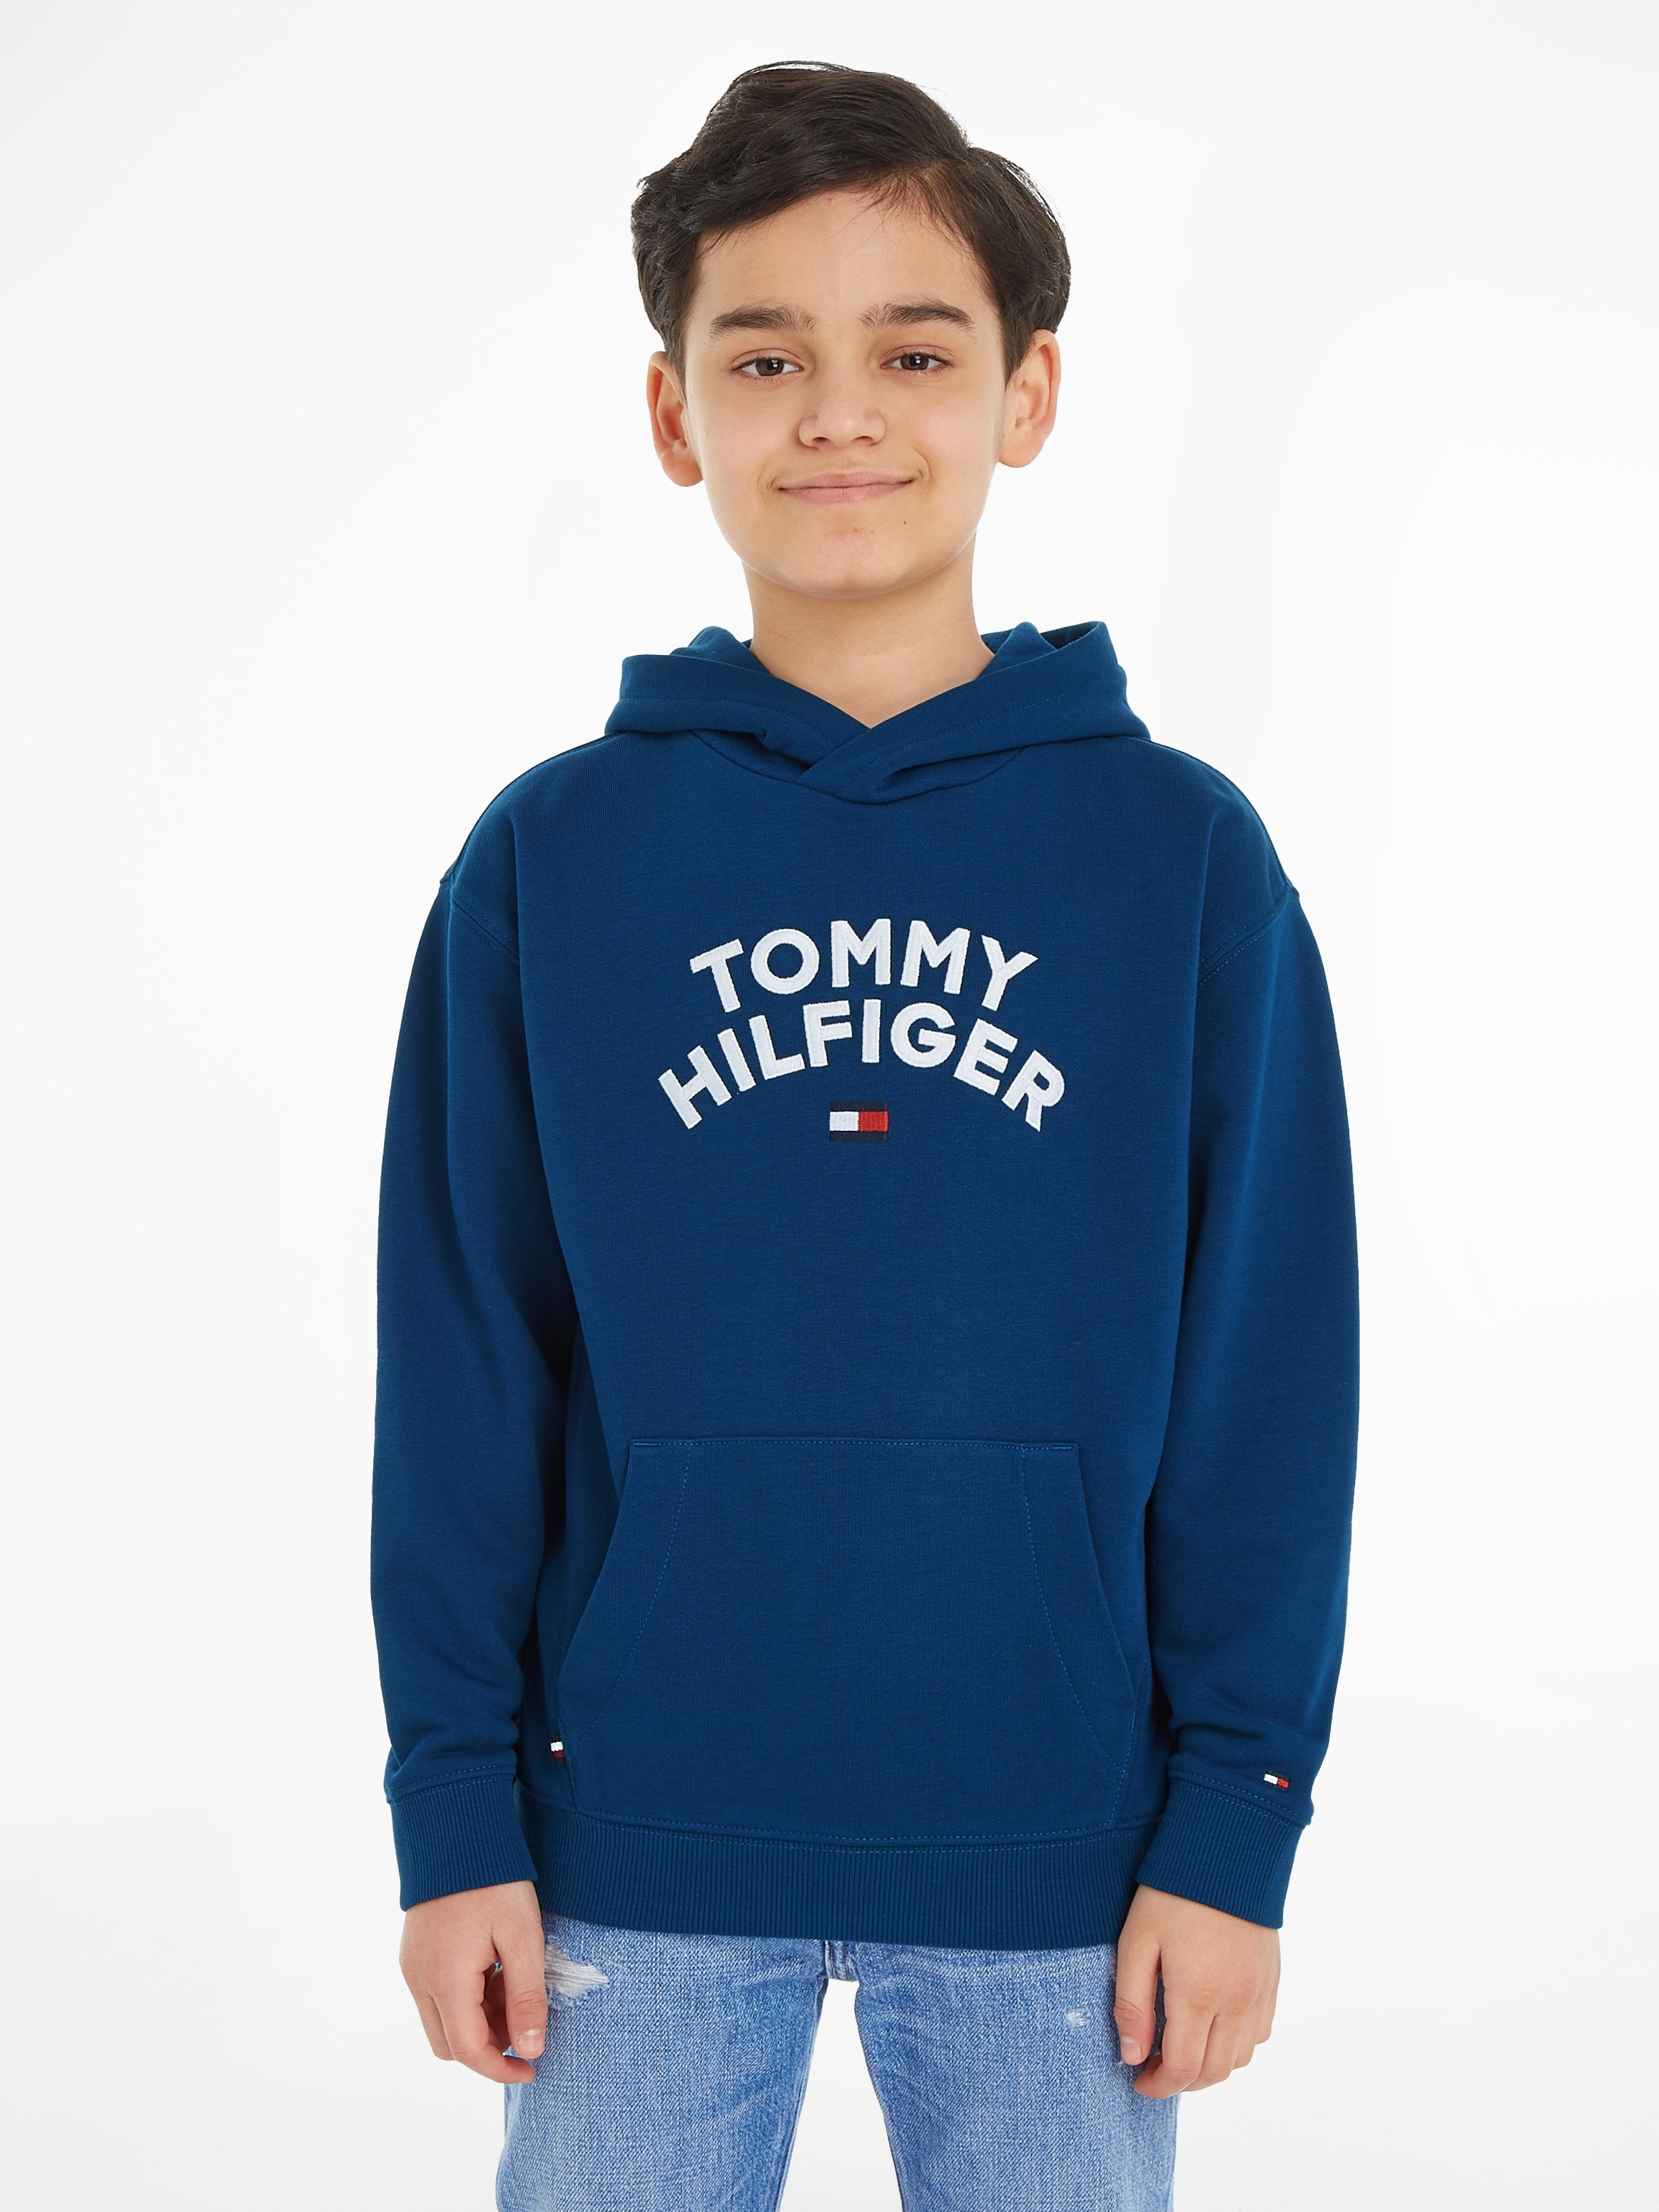 Tommy Hilfiger Hoodie »TOMMY HILFIGER FLAG HOODIE« à prix réduit!